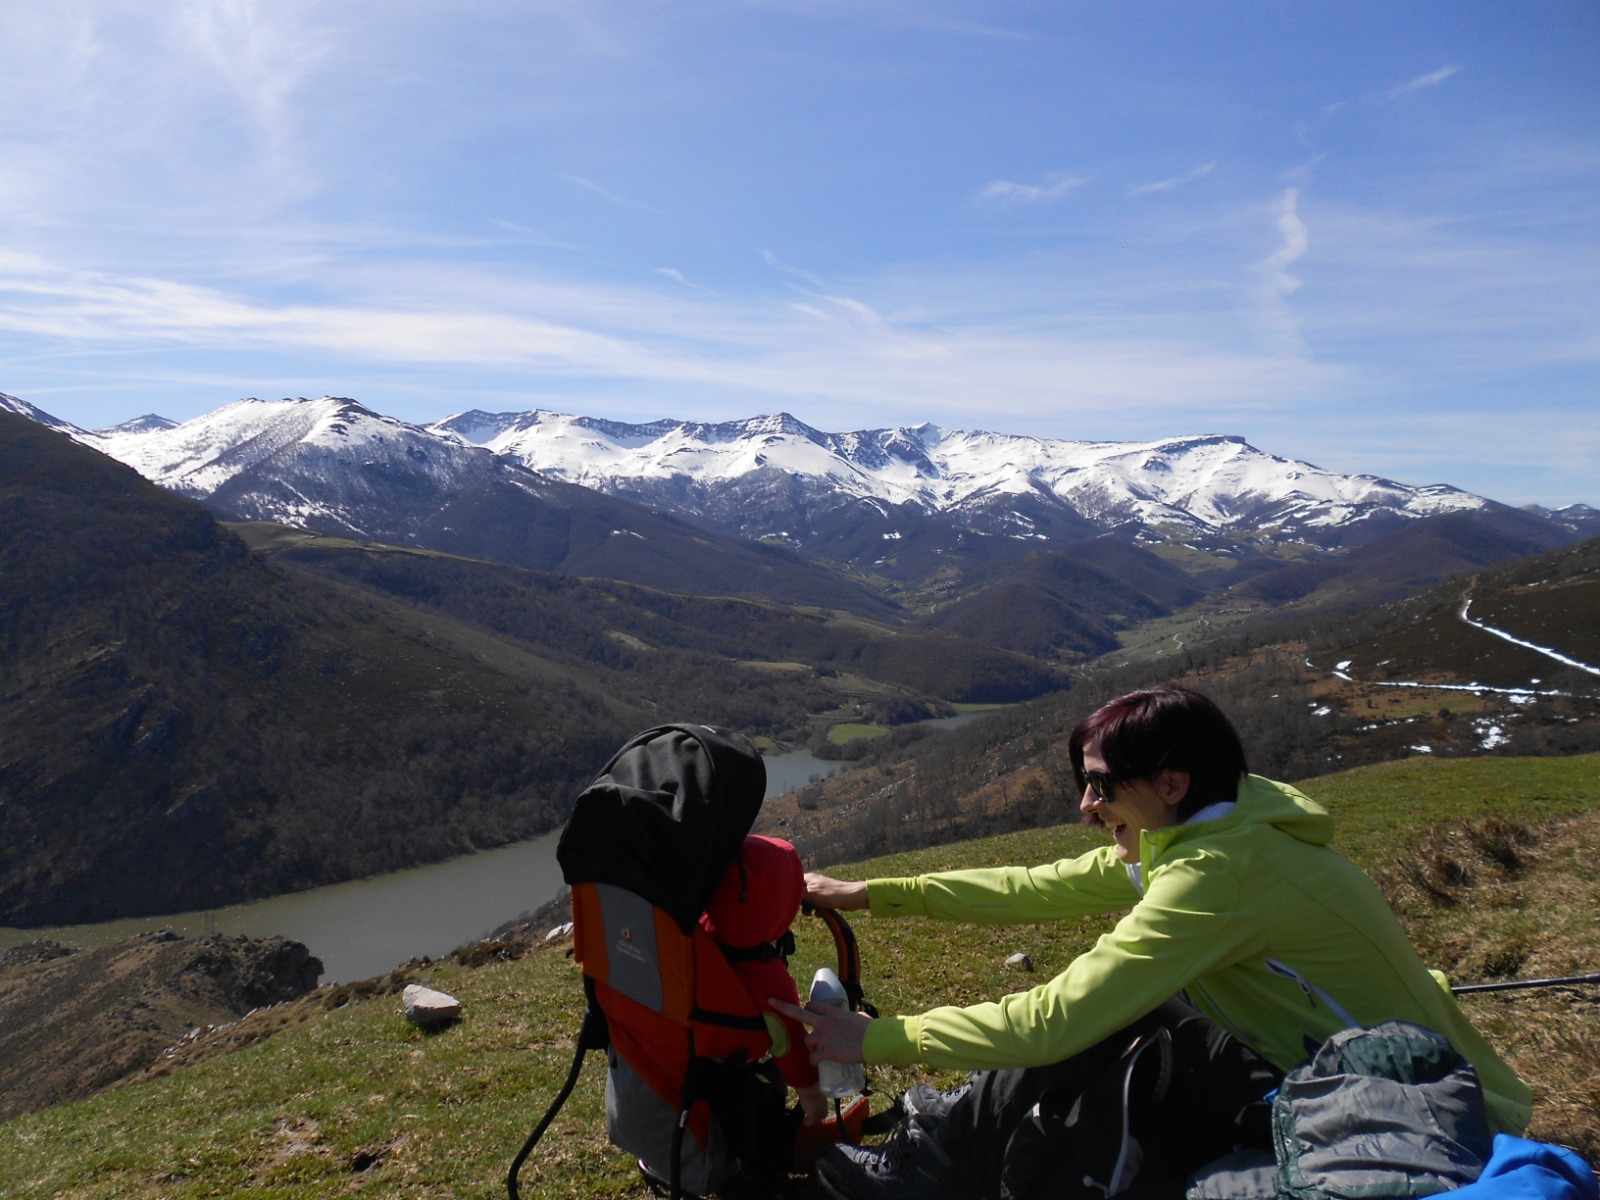 Patricia le sonríe a su hija, que está en una mochila roja de portabebés, lleva en la mano un biberón y en su rostro unas gafas de sol negras. Al fondo las montañas nevadas del valle de Nansa (Cantabria).